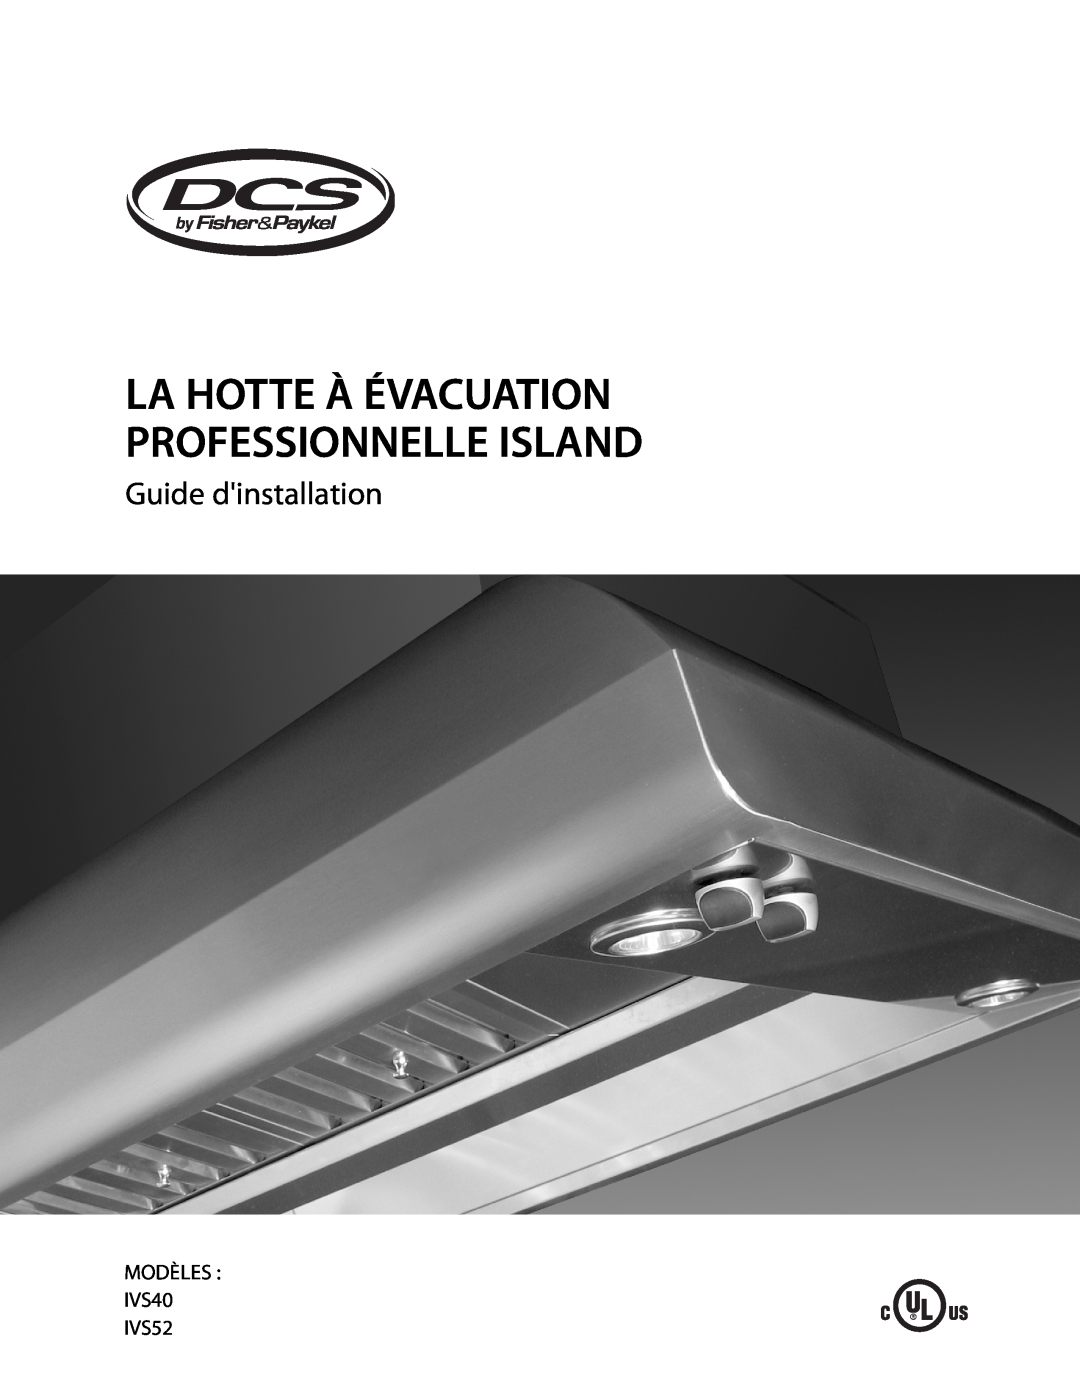 DCS 221712 manual Guide dinstallation, MODÈLES IVS40 IVS52, La Hotte À Évacuation Professionnelle Island 